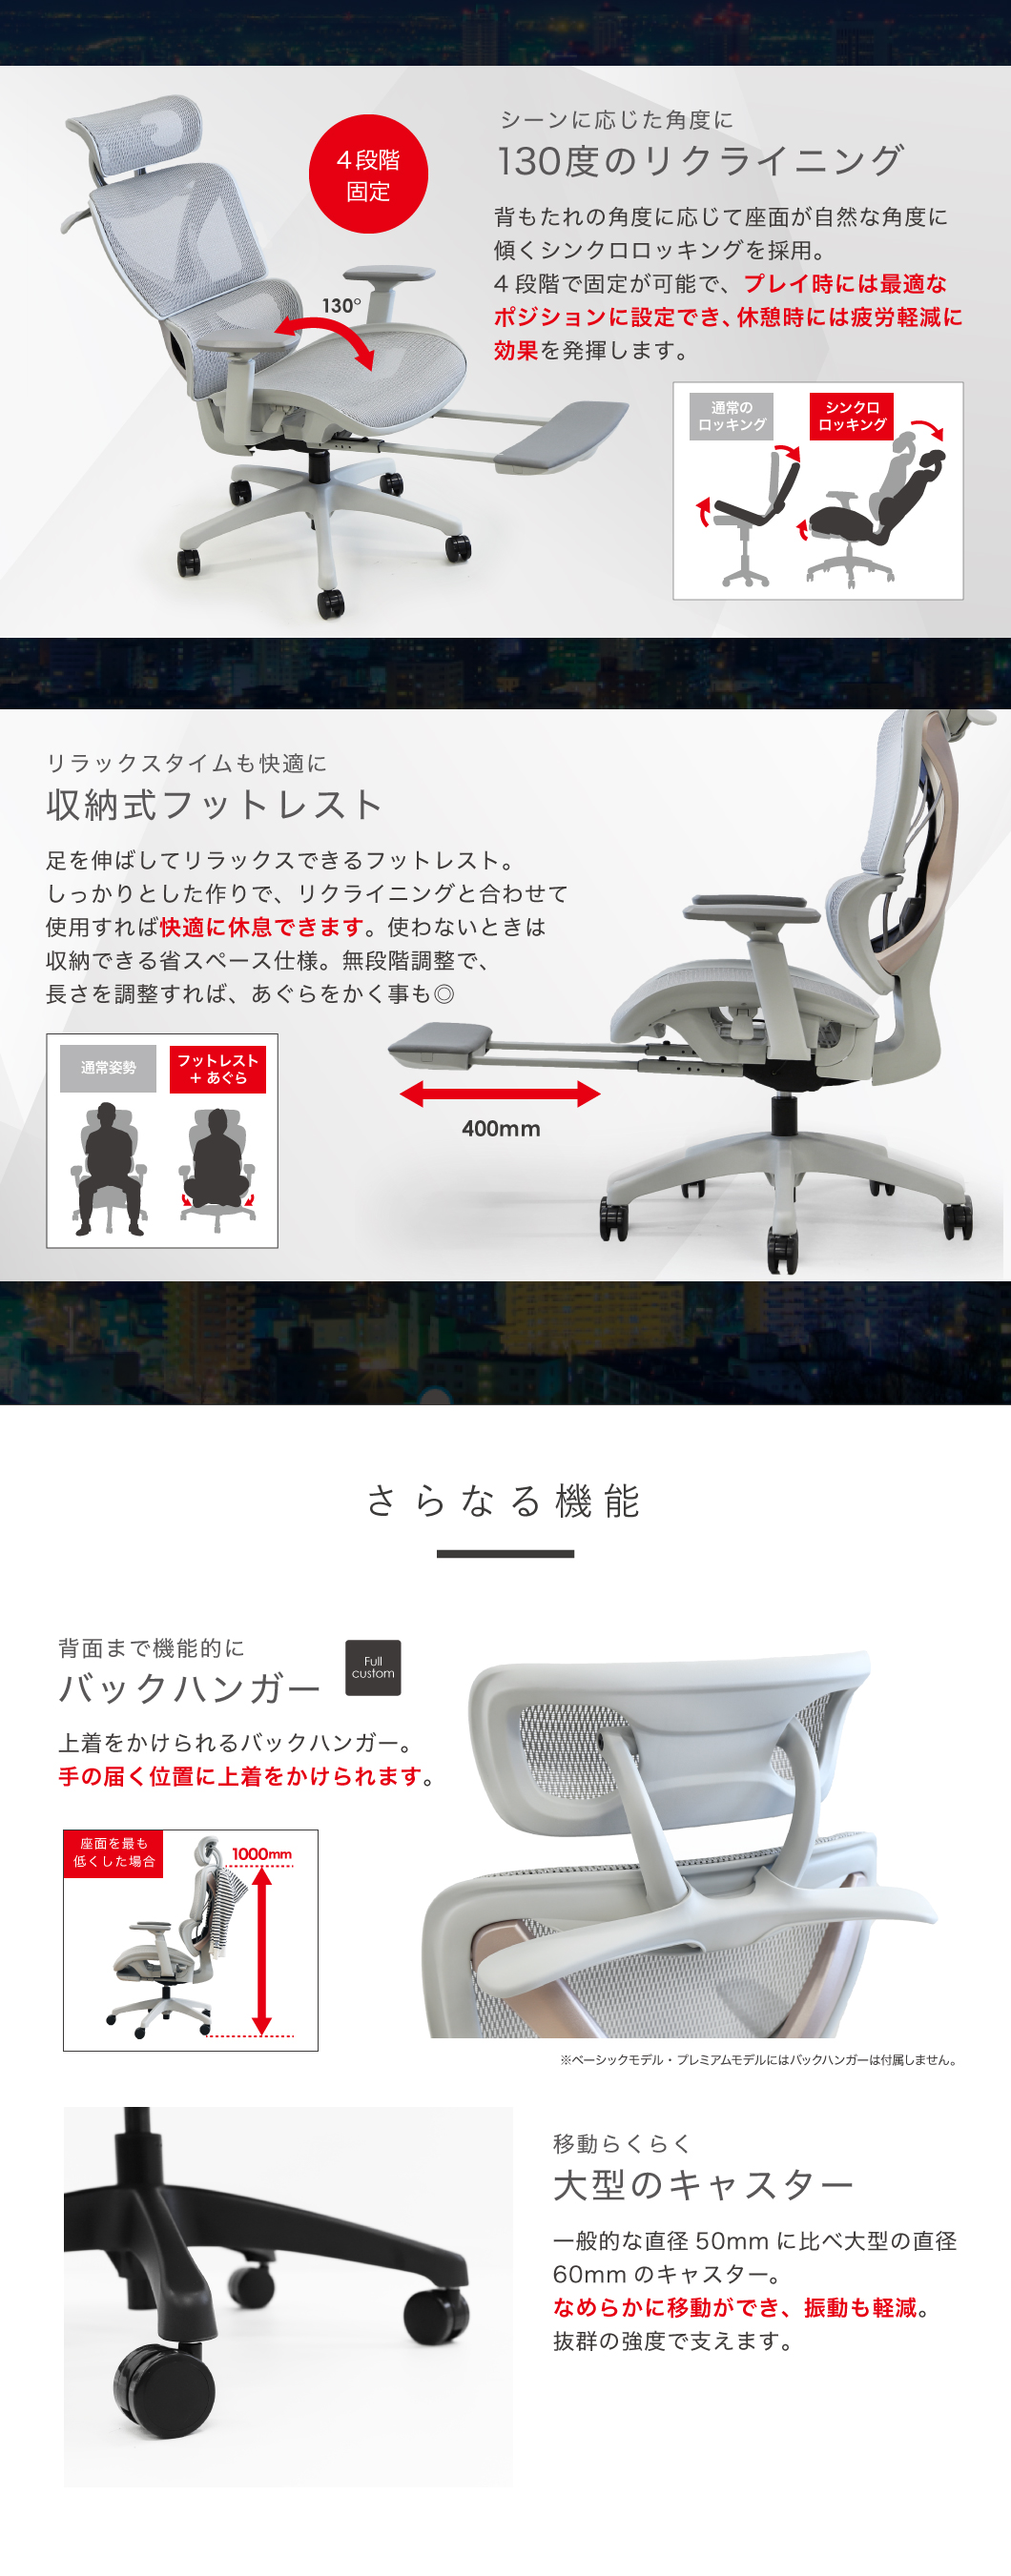 送料無料 ゲーミングチェア メッシュ パソコンチェア デスクチェア おしゃれ リクライニング 椅子 オットマン 高級 腰痛 ランバーサポート イス  DX-1HR-GYG ロッキングチェア | east-wind.jp